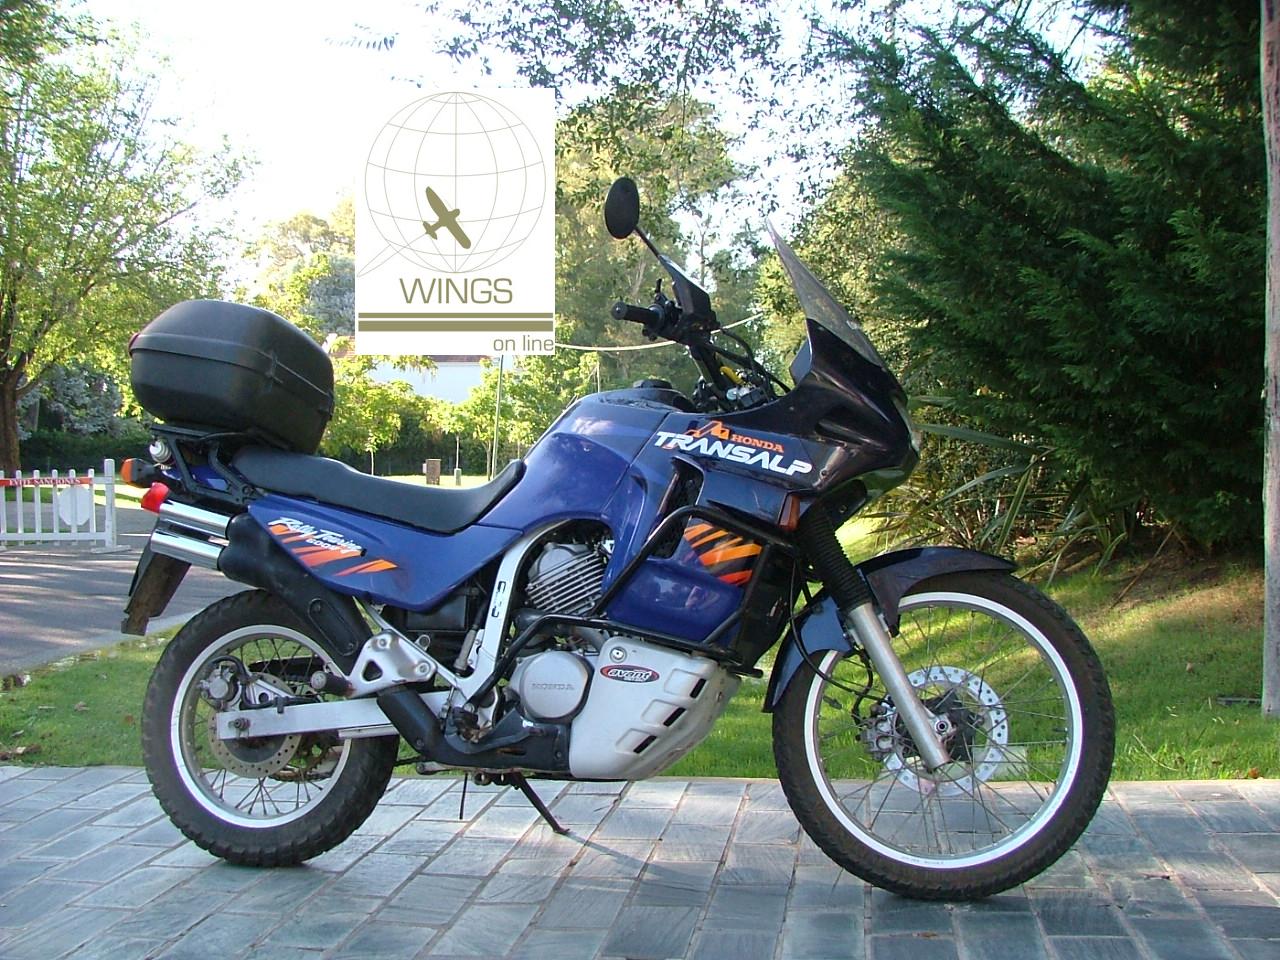 Moto Honda Transalp 1996 x ULM Falcon Biplaza